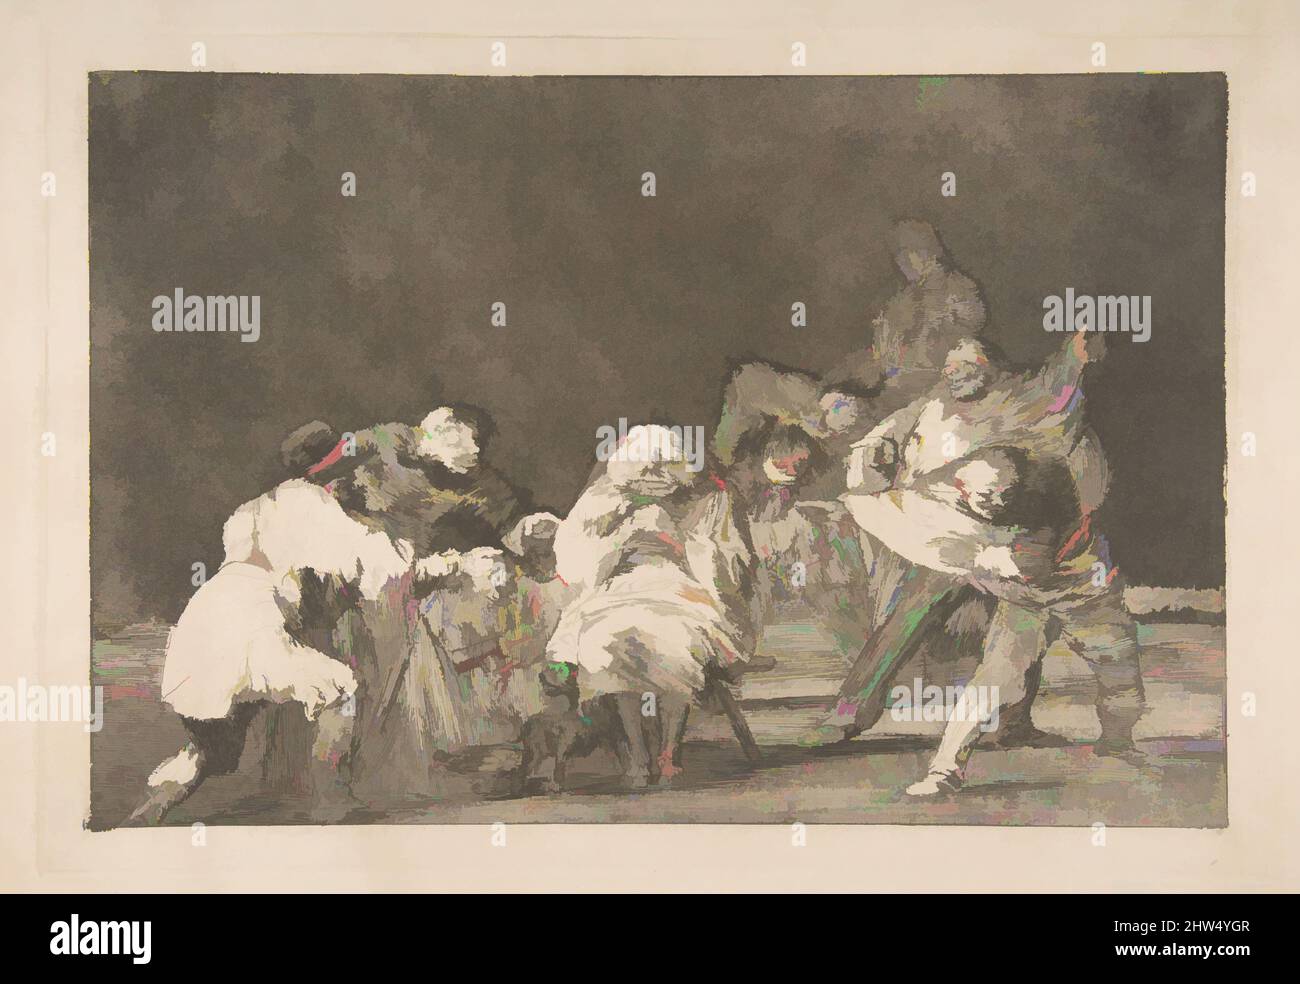 Arte ispirata al piatto 17 dei 'Disparates': Lealtà, ca. 1816–23 (stampa privata CA4), incisione e brunita acquatinta, lastra: 9 9/16 x 13 7/8 pollici (24,3 x 35,2 cm), Prints, Goya (Francisco de Goya y Lucientes) (spagnolo, Fuendetodos 1746–1828 Bordeaux), dalla stampa privata c, opere classiche modernizzate da Artotop con un tuffo di modernità. Forme, colore e valore, impatto visivo accattivante sulle emozioni artistiche attraverso la libertà delle opere d'arte in modo contemporaneo. Un messaggio senza tempo che persegue una nuova direzione selvaggiamente creativa. Artisti che si rivolgono al supporto digitale e creano l'NFT Artotop Foto Stock